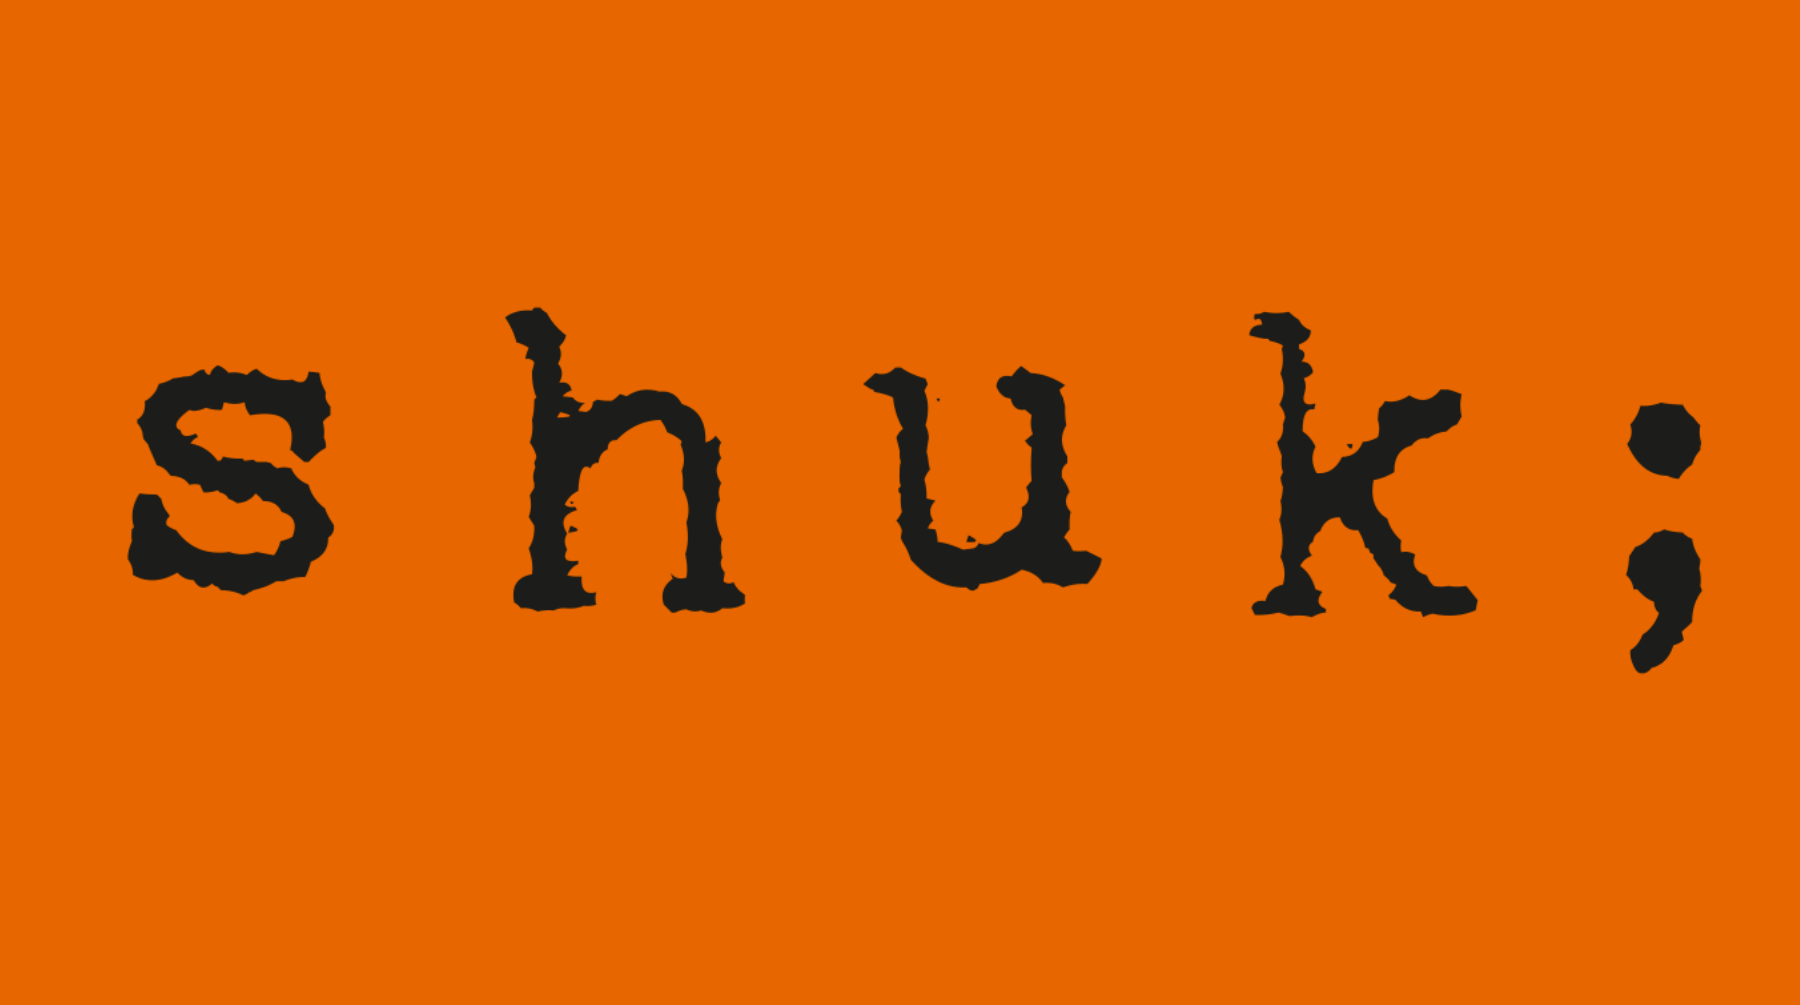 logo for Shuk;